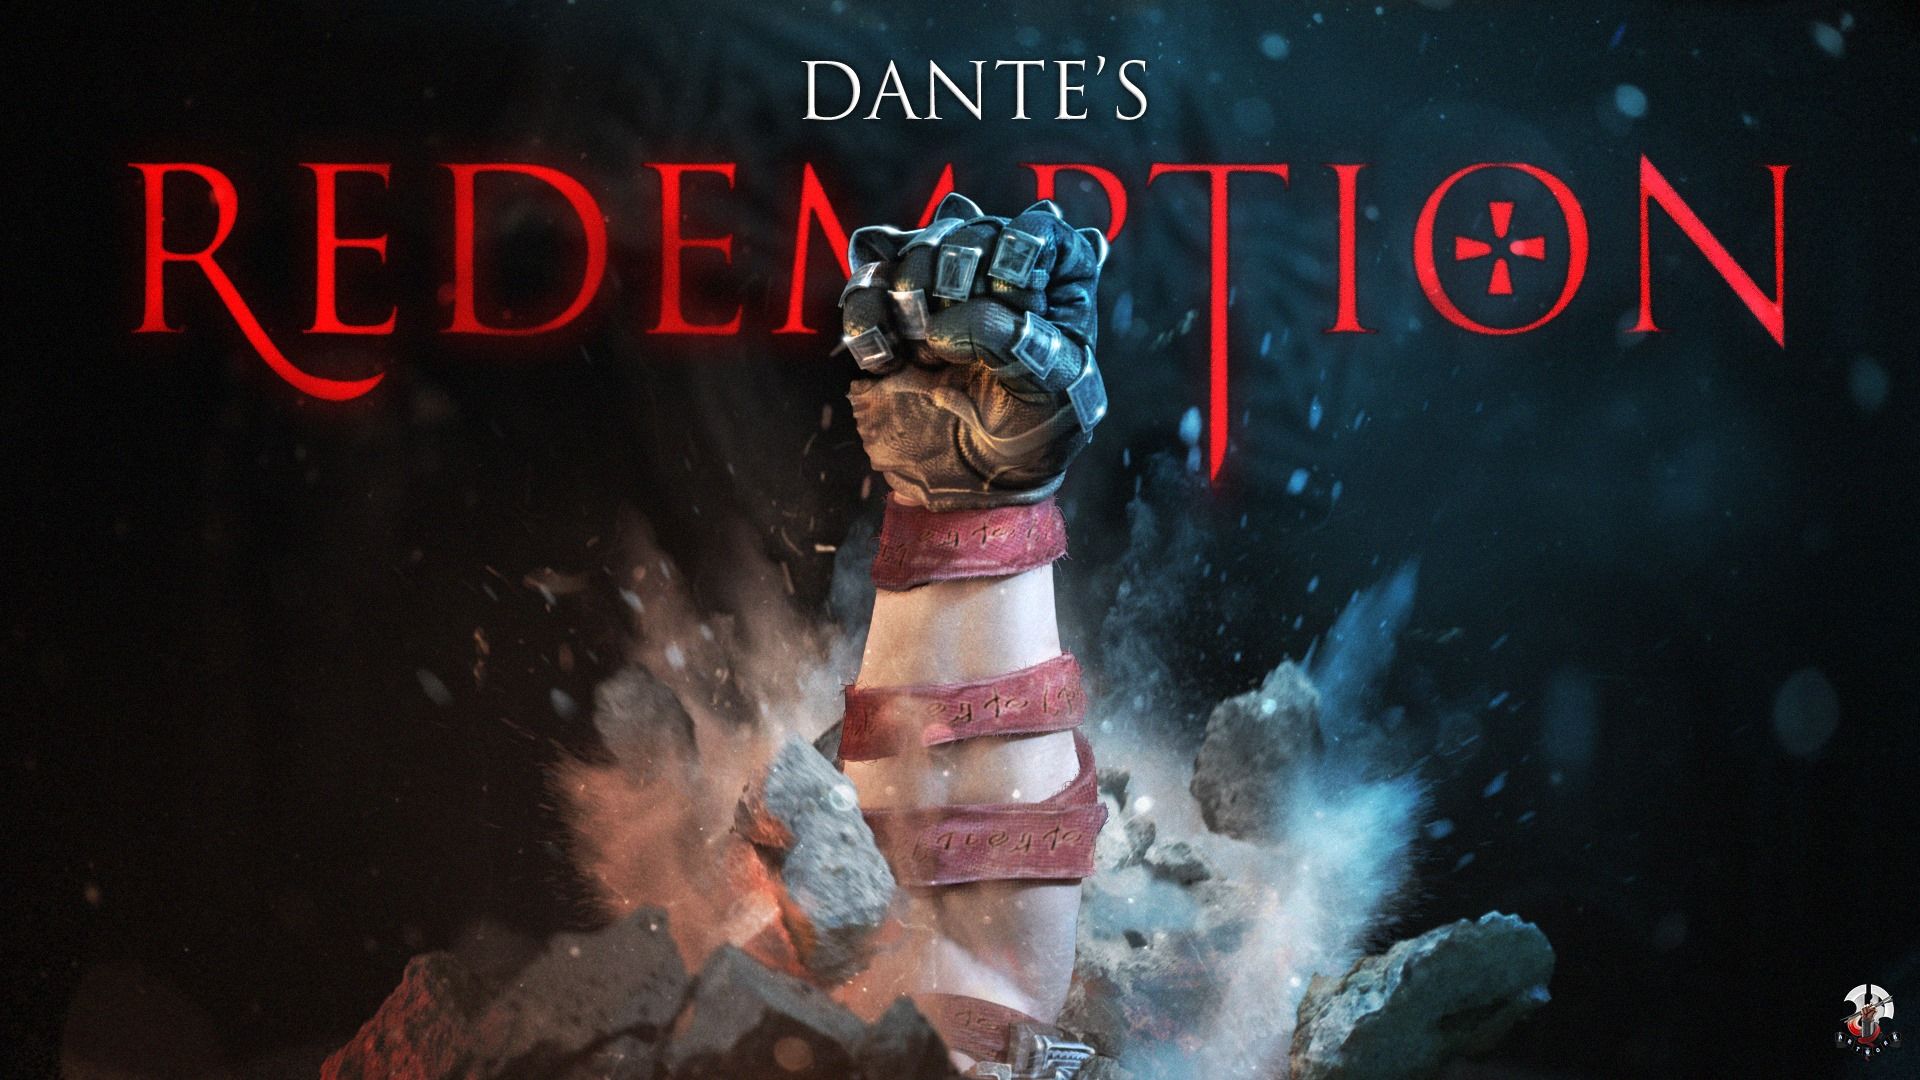 Dante S Inferno Ps4